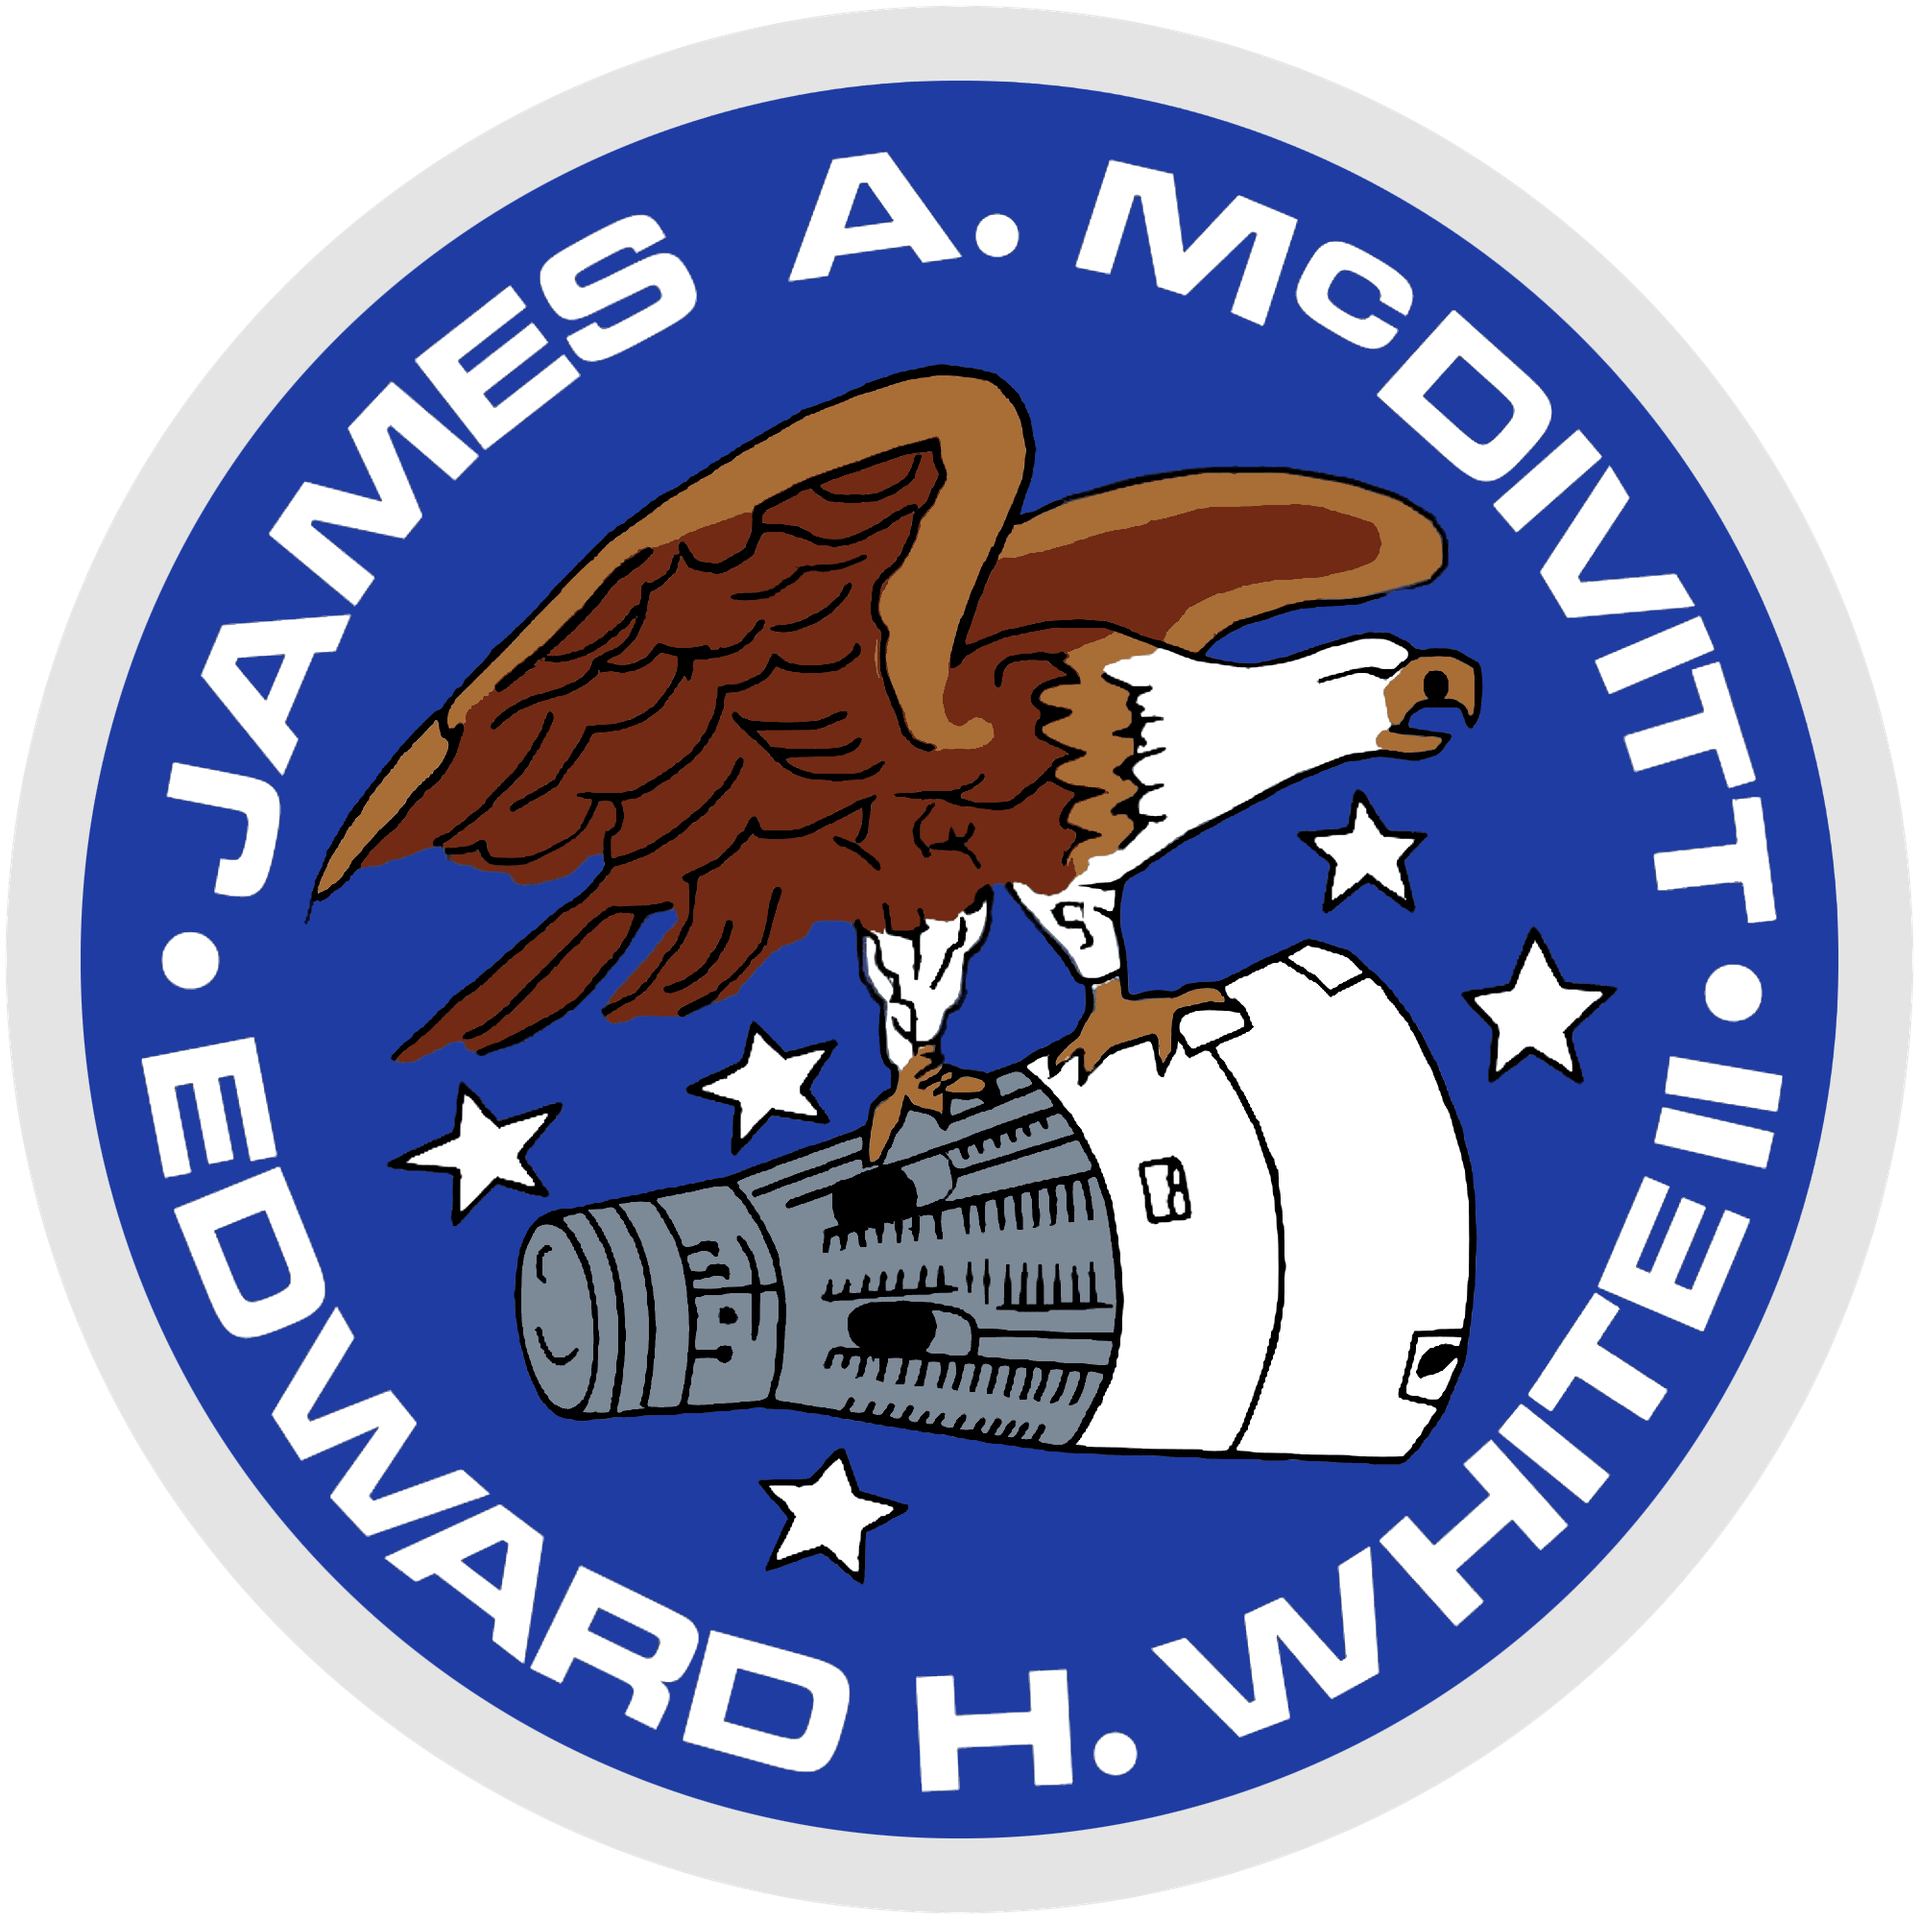 Gemini IV (Gemini 4)